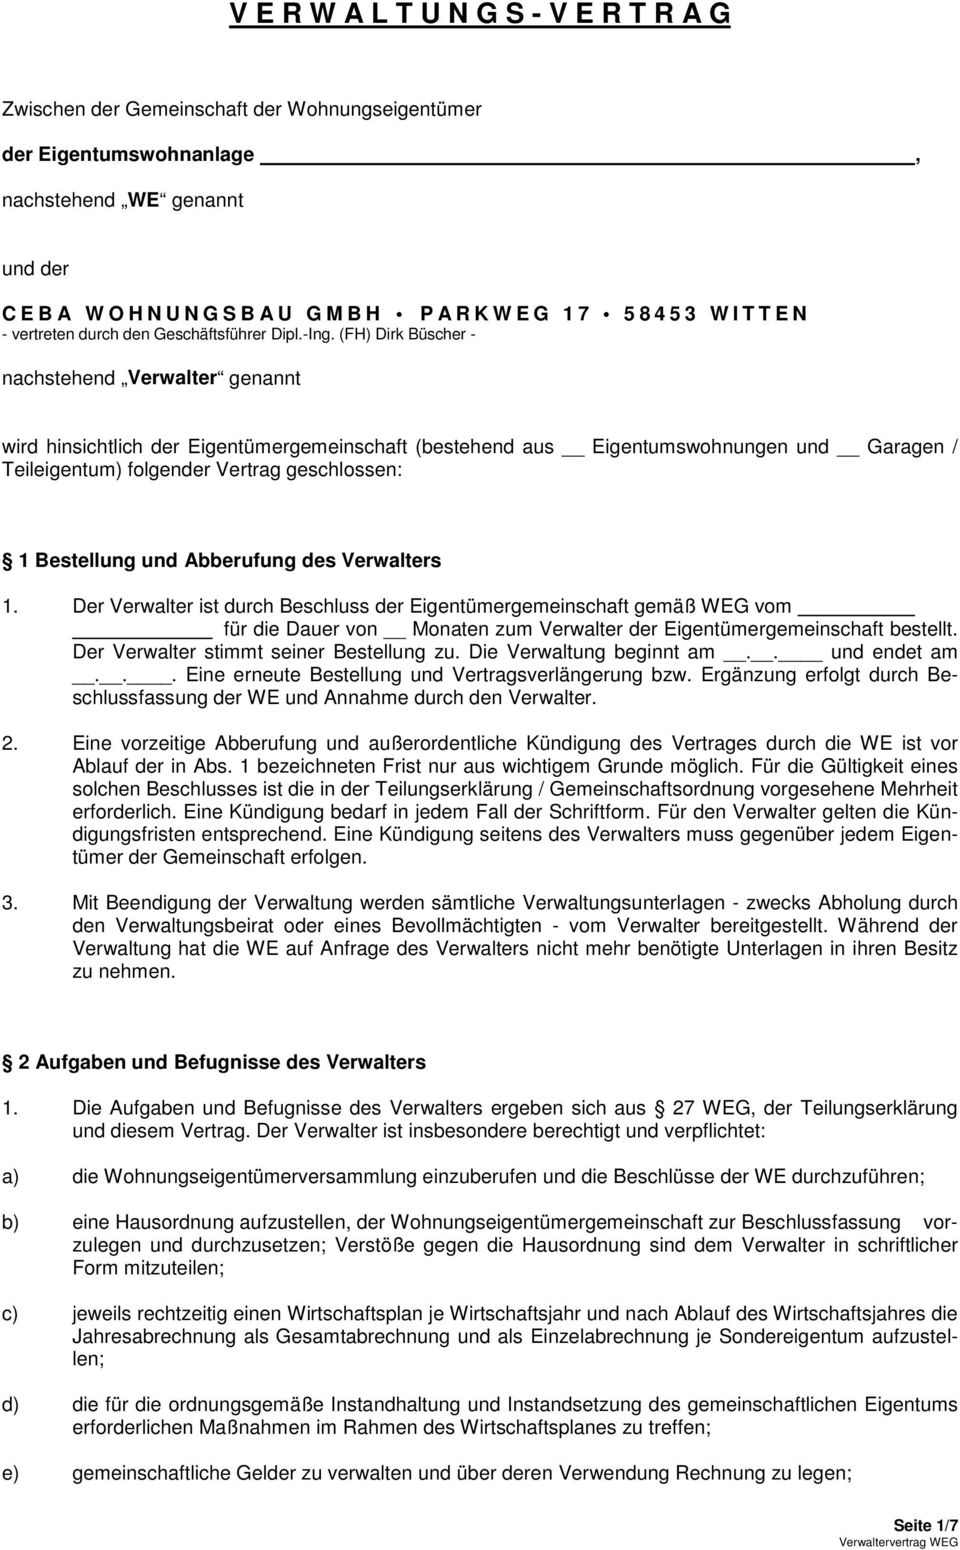 (FH) Dirk Büscher - nachstehend Verwalter genannt wird hinsichtlich der Eigentümergemeinschaft (bestehend aus Eigentumswohnungen und Garagen / Teileigentum) folgender Vertrag geschlossen: 1